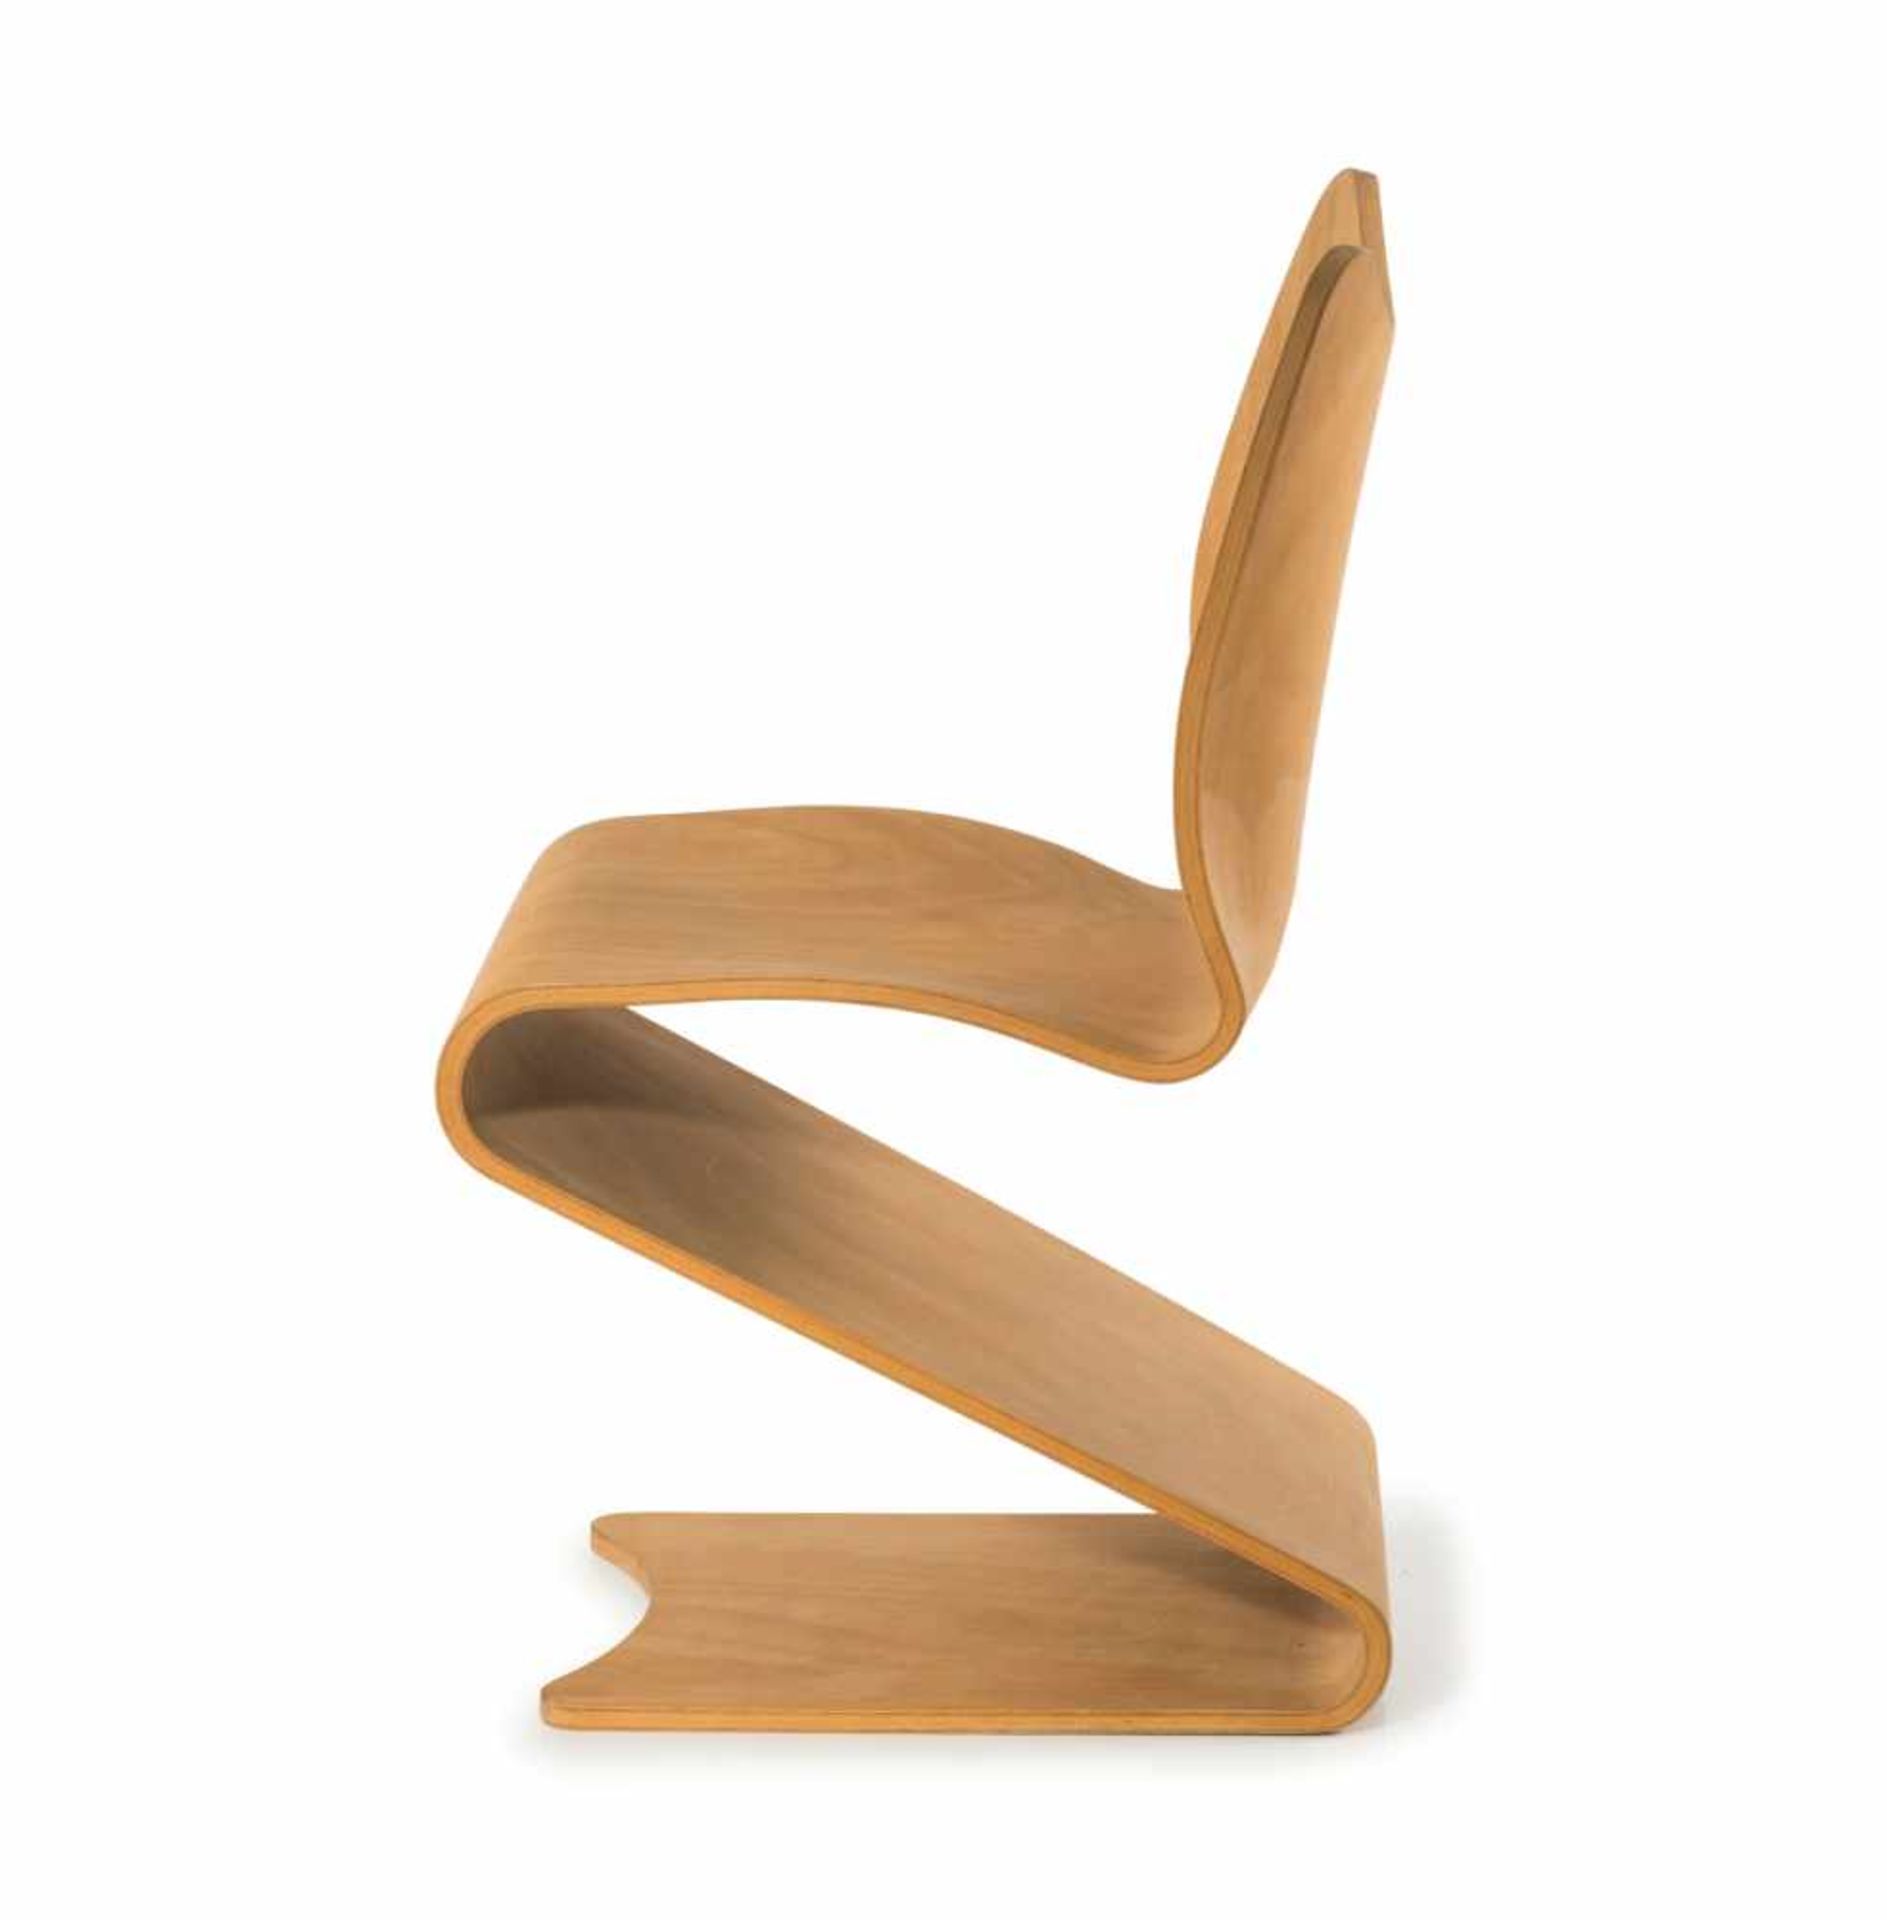 Stuhl 'S-chair', 1965 Verner Panton H. 80,5 x 43,5 x 47 cm. August Sommer, Plüderhausen für